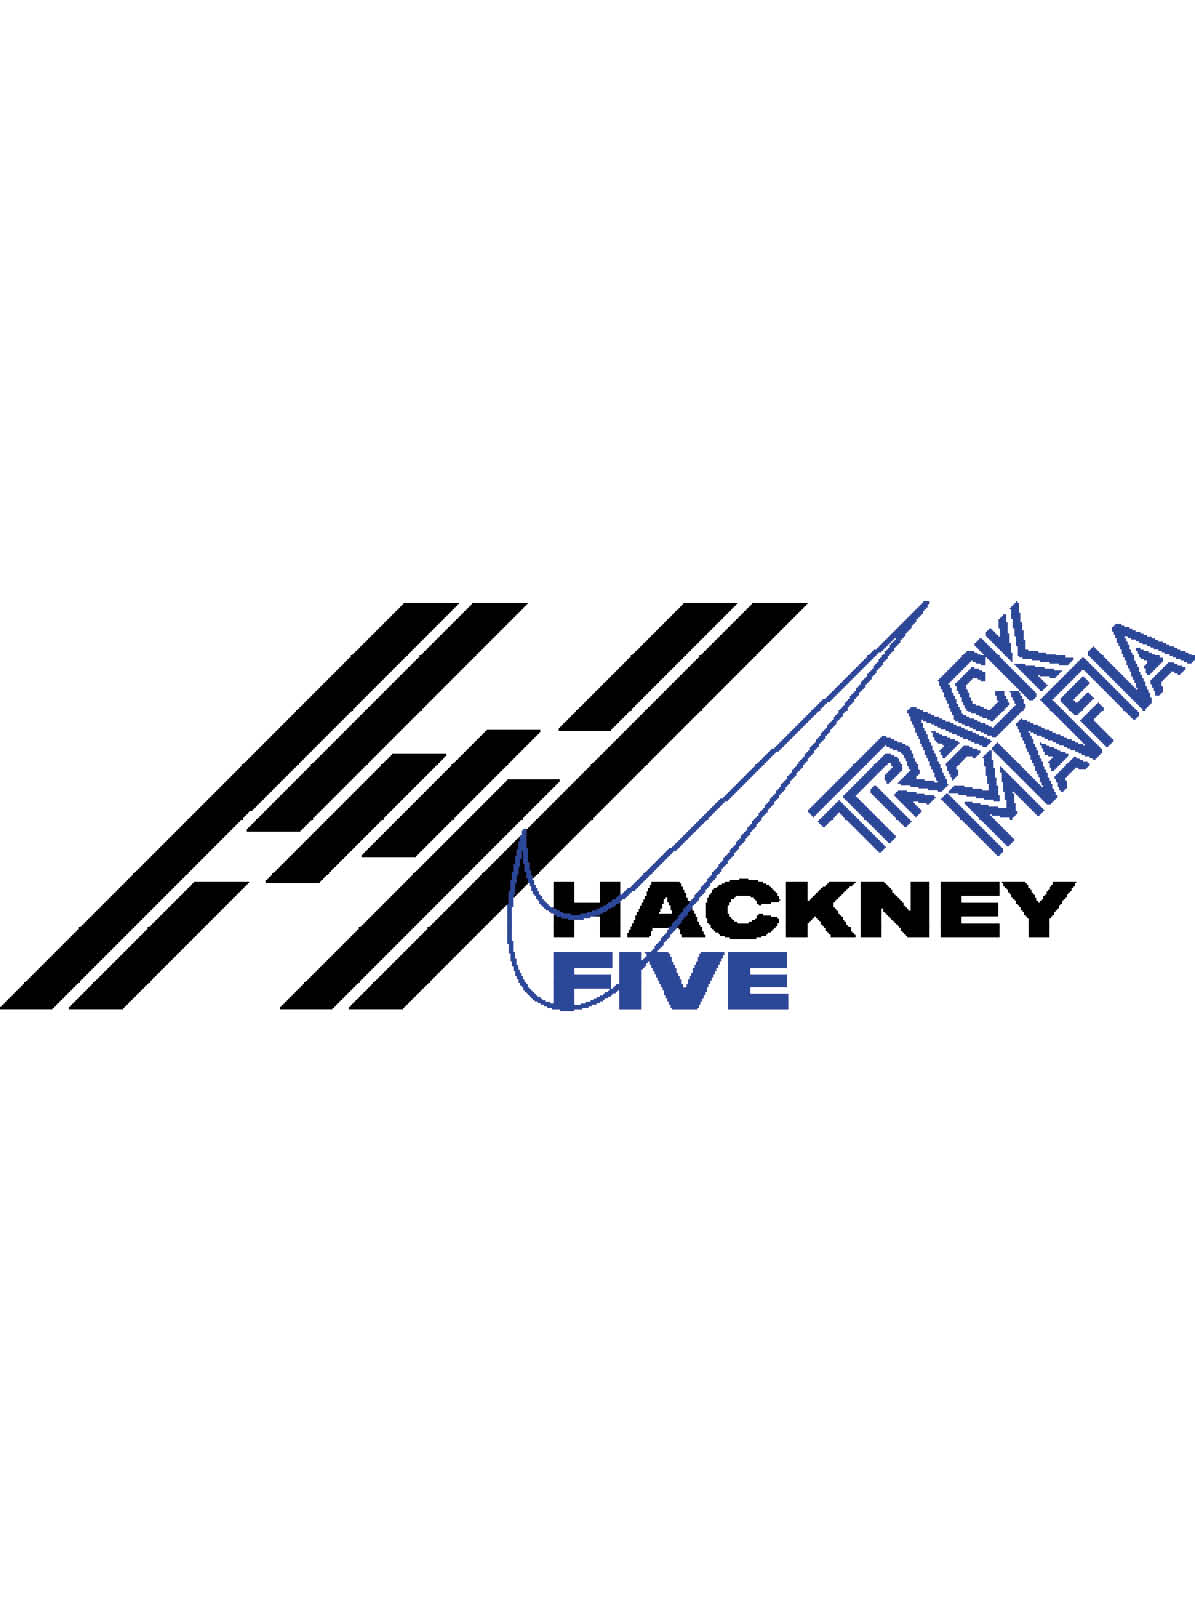 PROJECT Hackney haf4